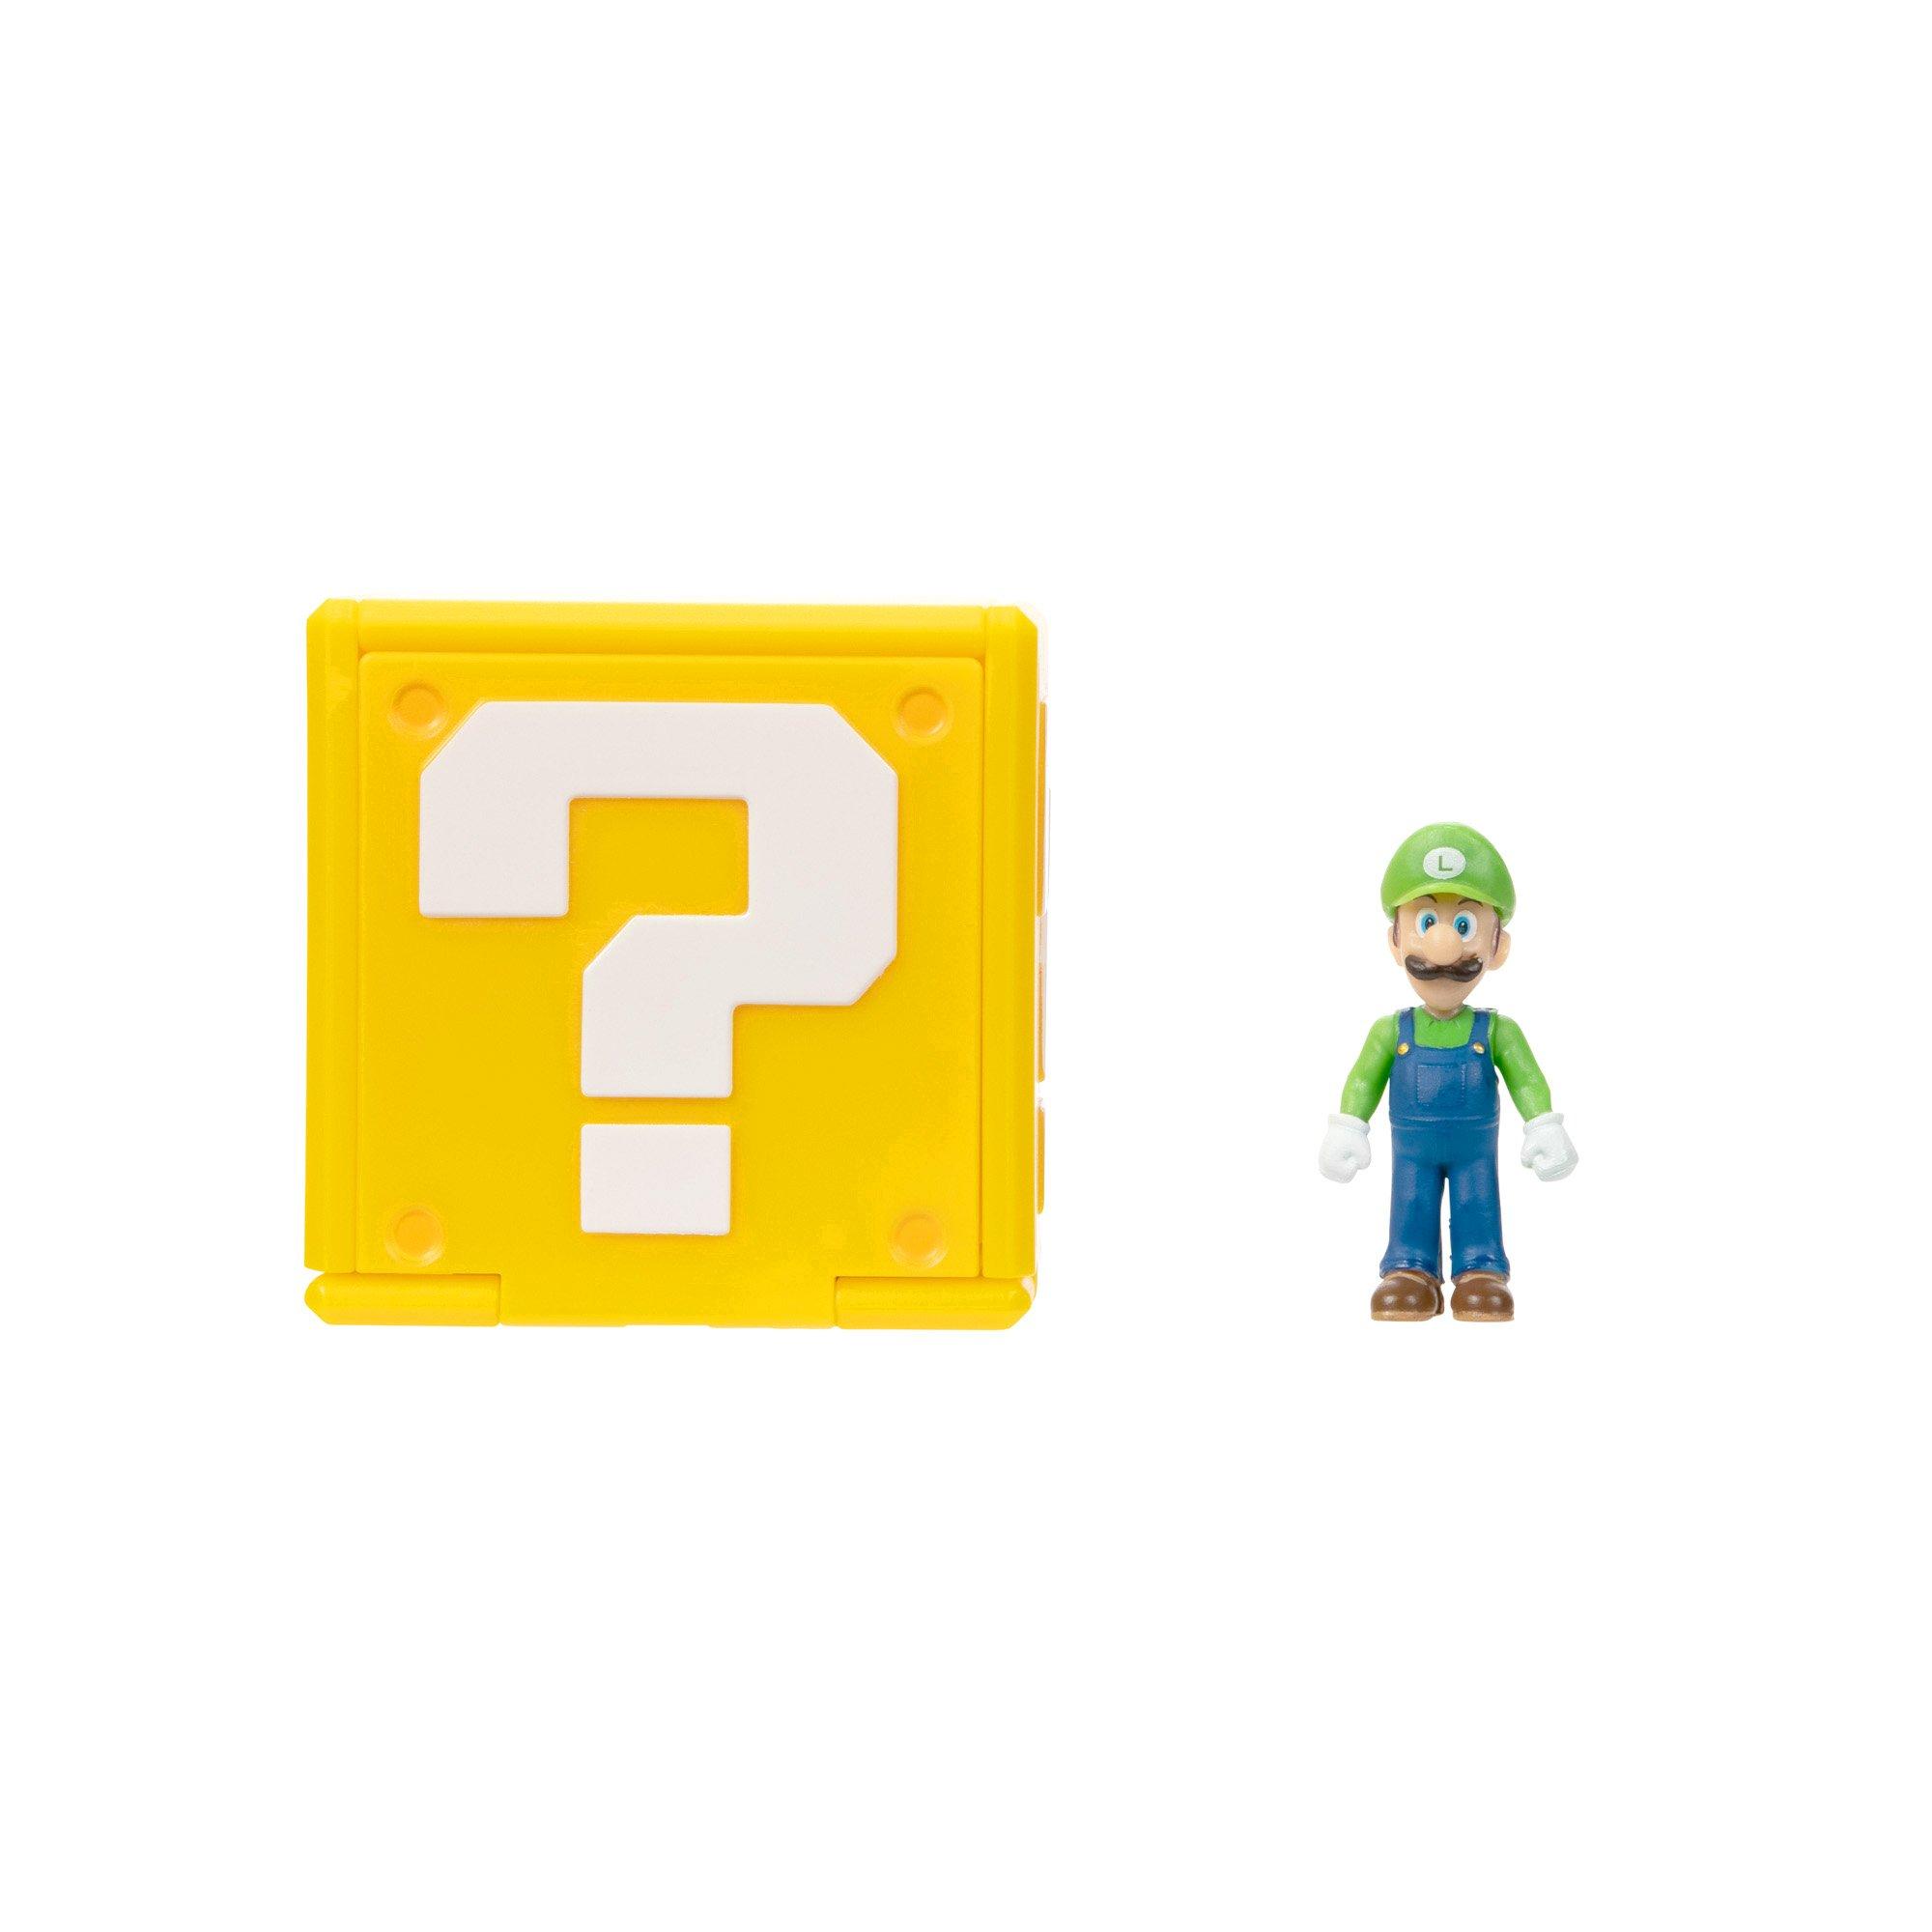 Luigi - Super Mario Figurine by JAKKS